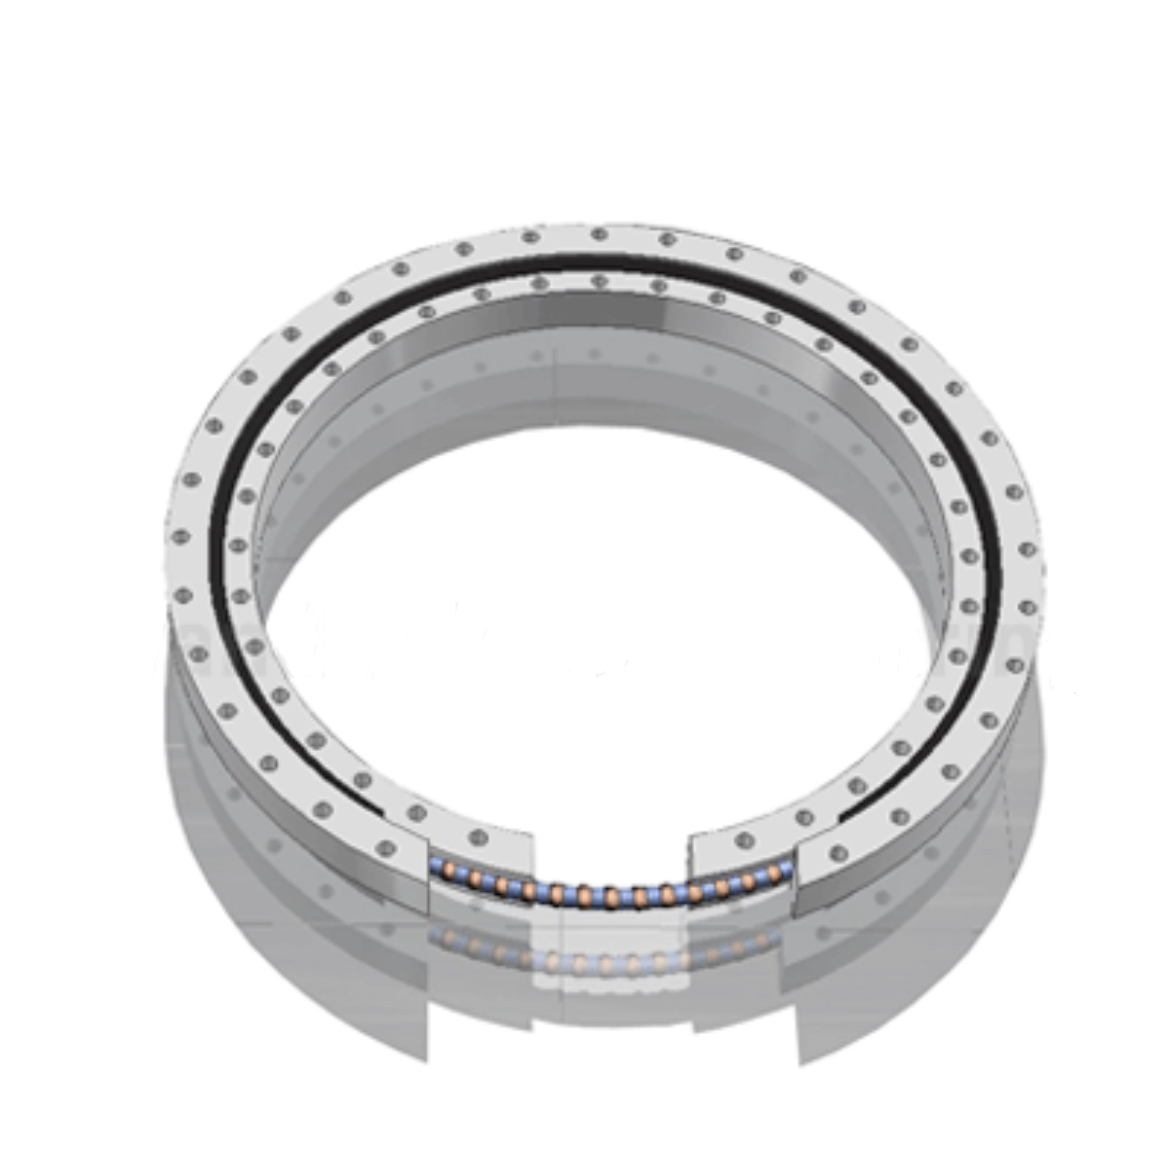 កាតព្វកិច្ចស្រាល slewing ring bearing ដោយគ្មានប្រអប់លេខ 060 ស៊េរី